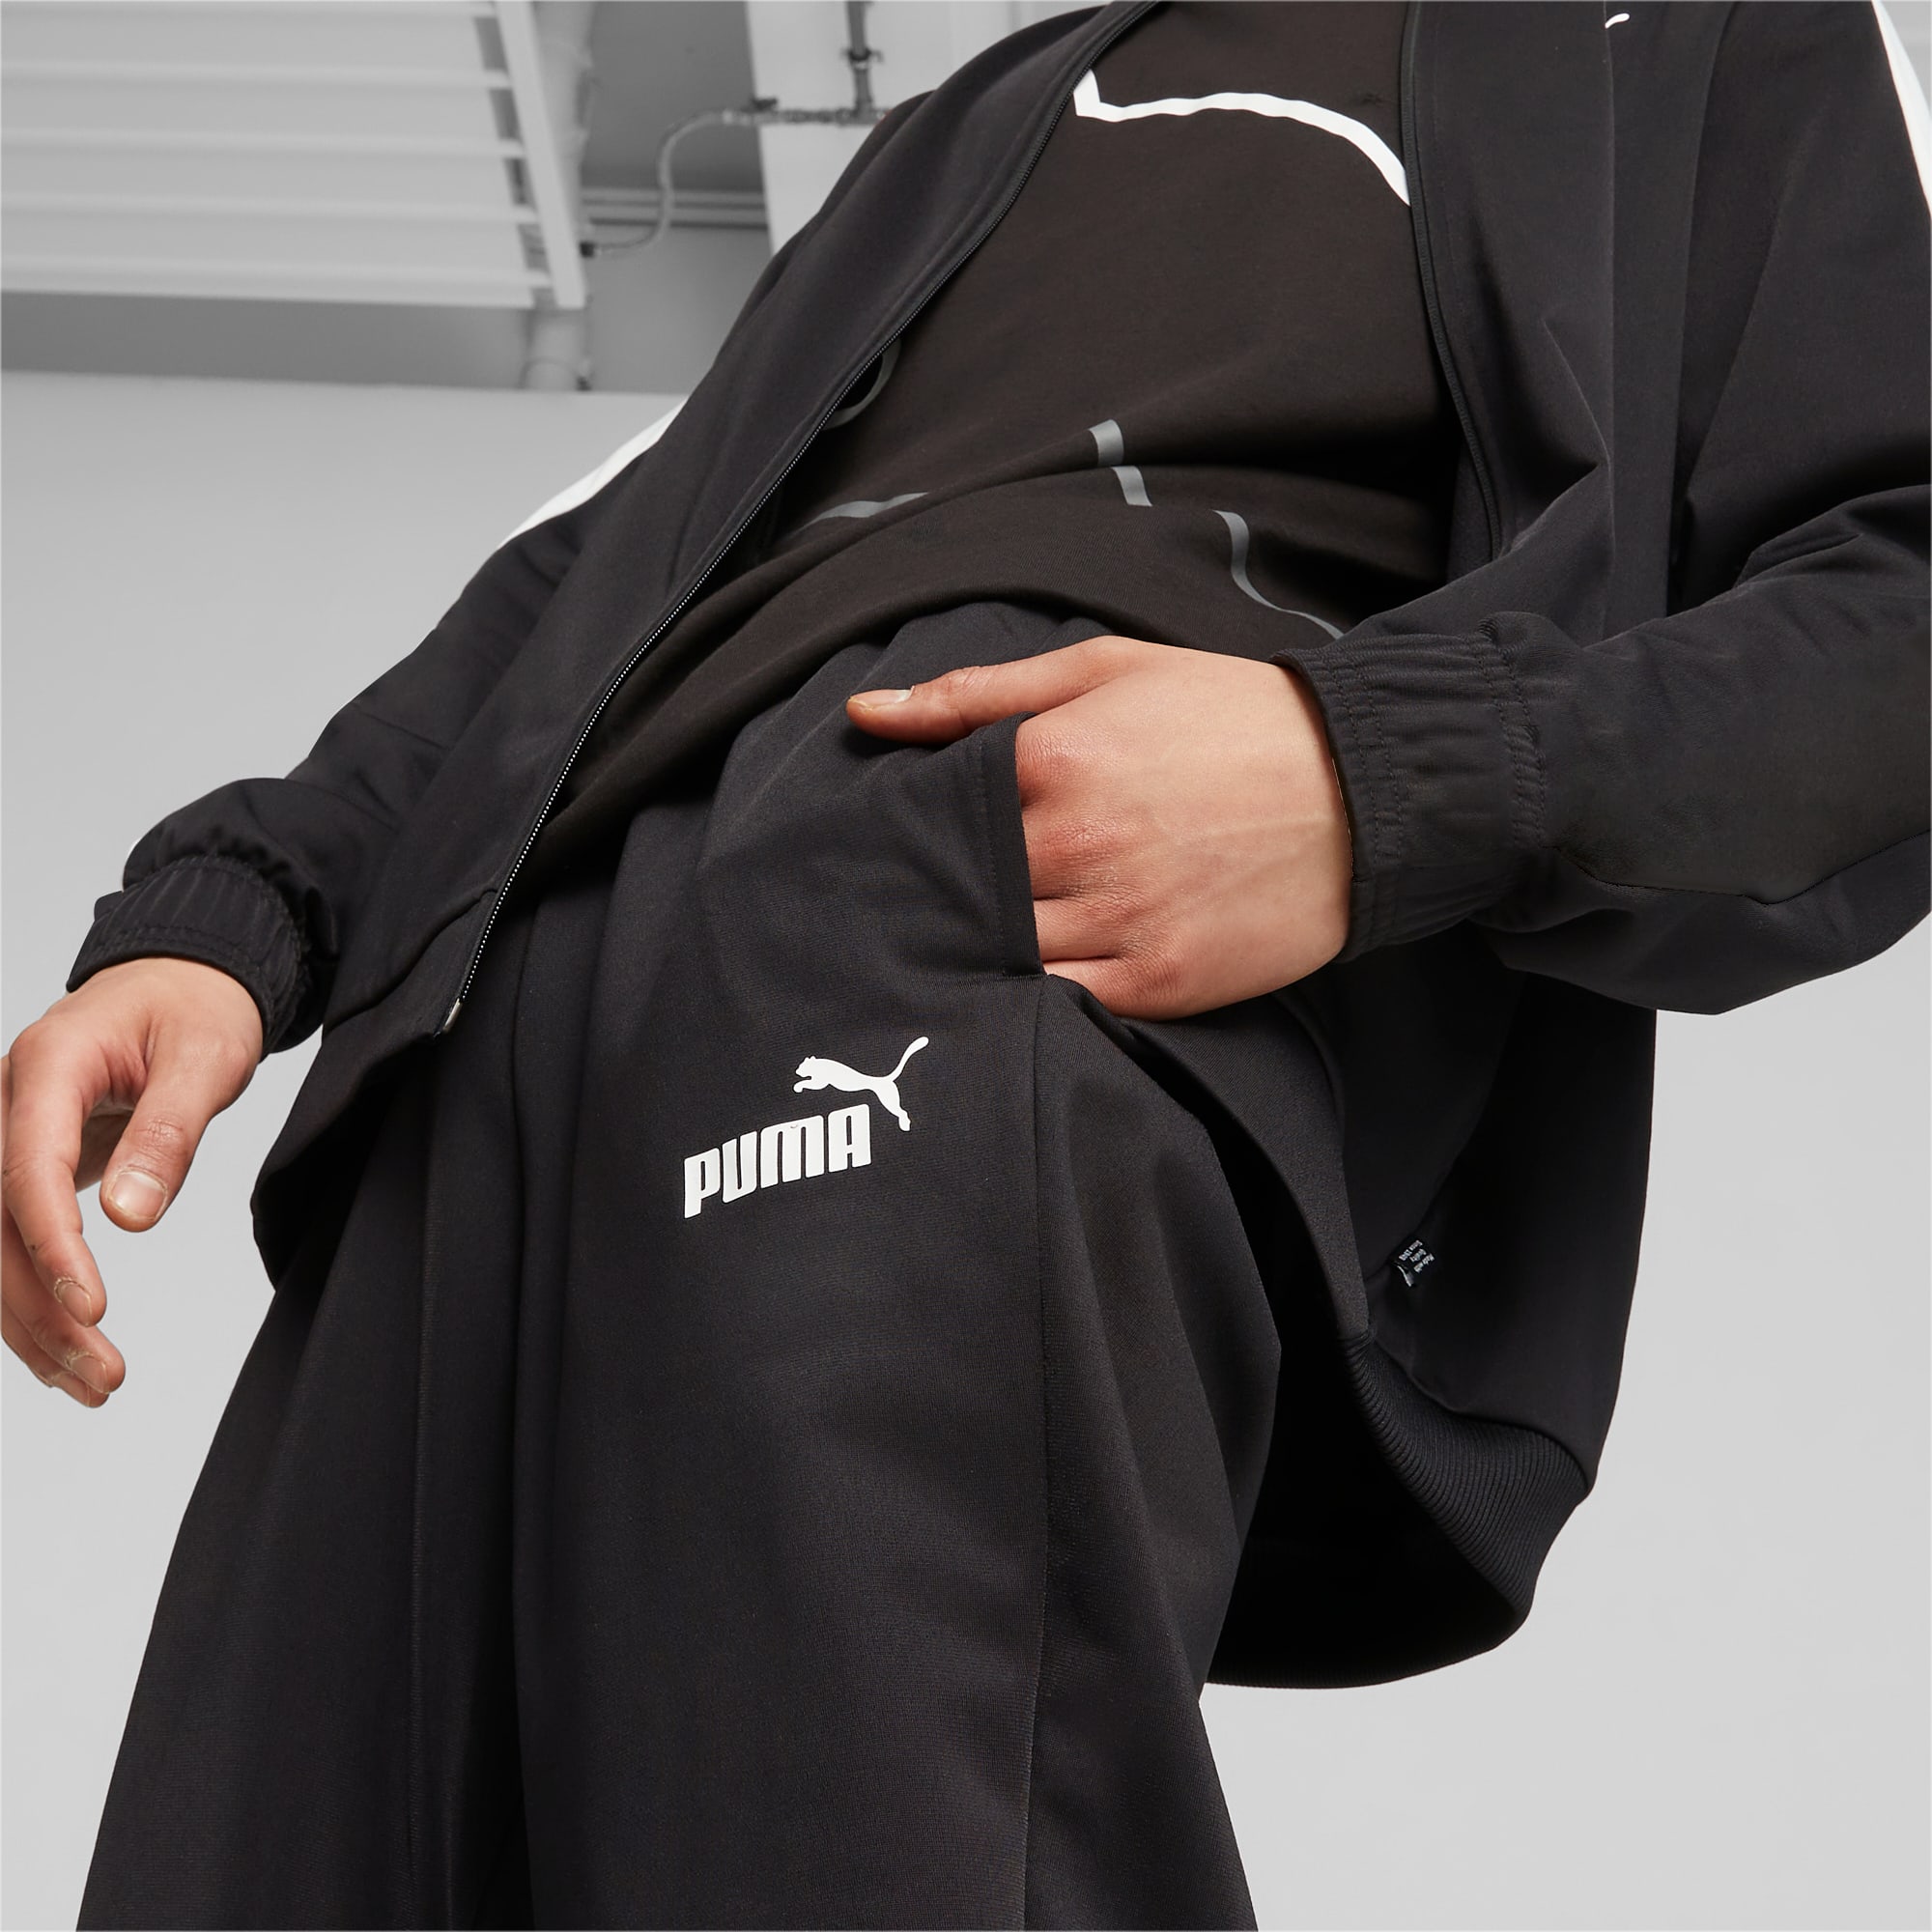 PUMA Men's Baseball Tricot Suit, Black, Size M